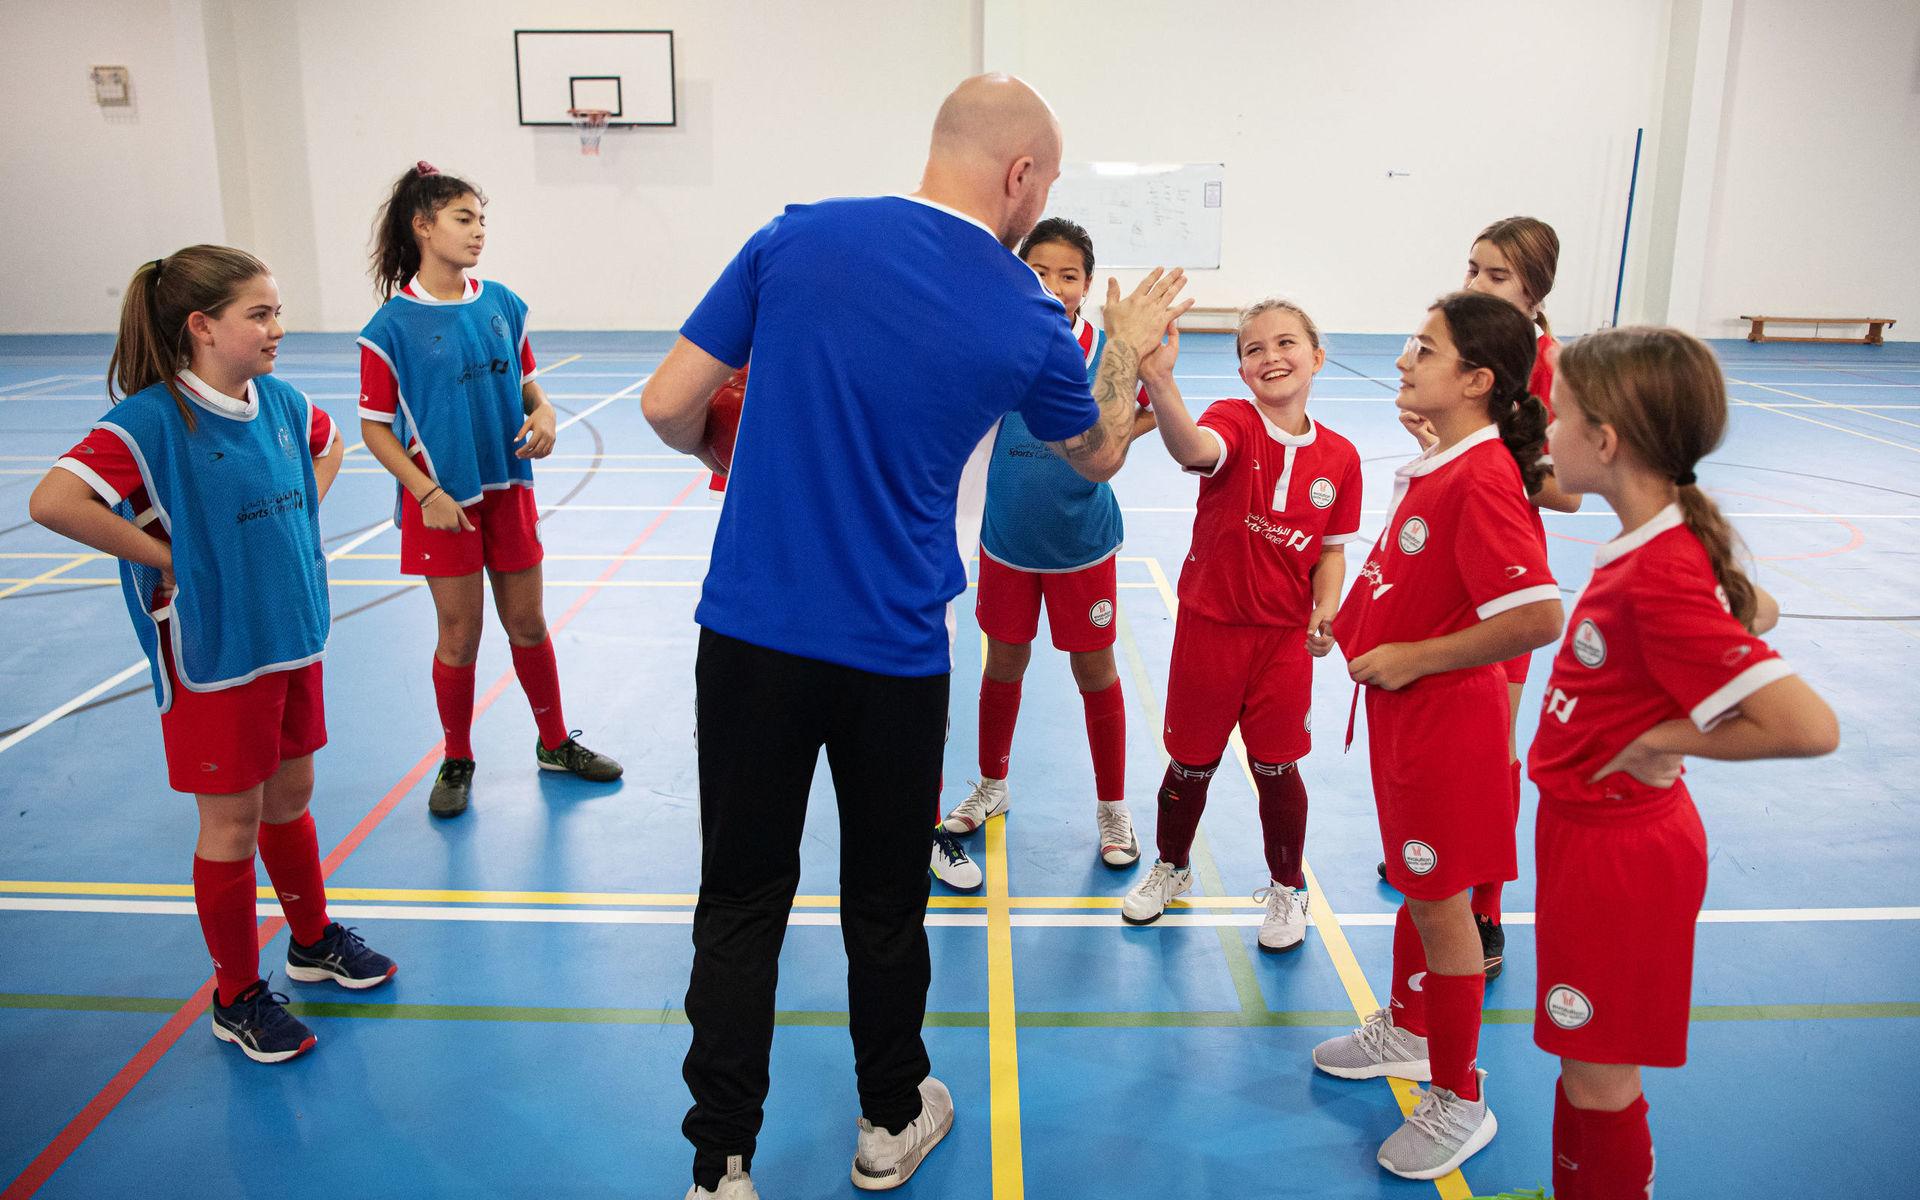 Evolution Sports är Qatars största privata fotbollsakademi och har cirka 100 flickor i tre lag. Många av dem har europeisk härkomst och kommer inom några år flytta härifrån när deras föräldrar lämnar landet. 